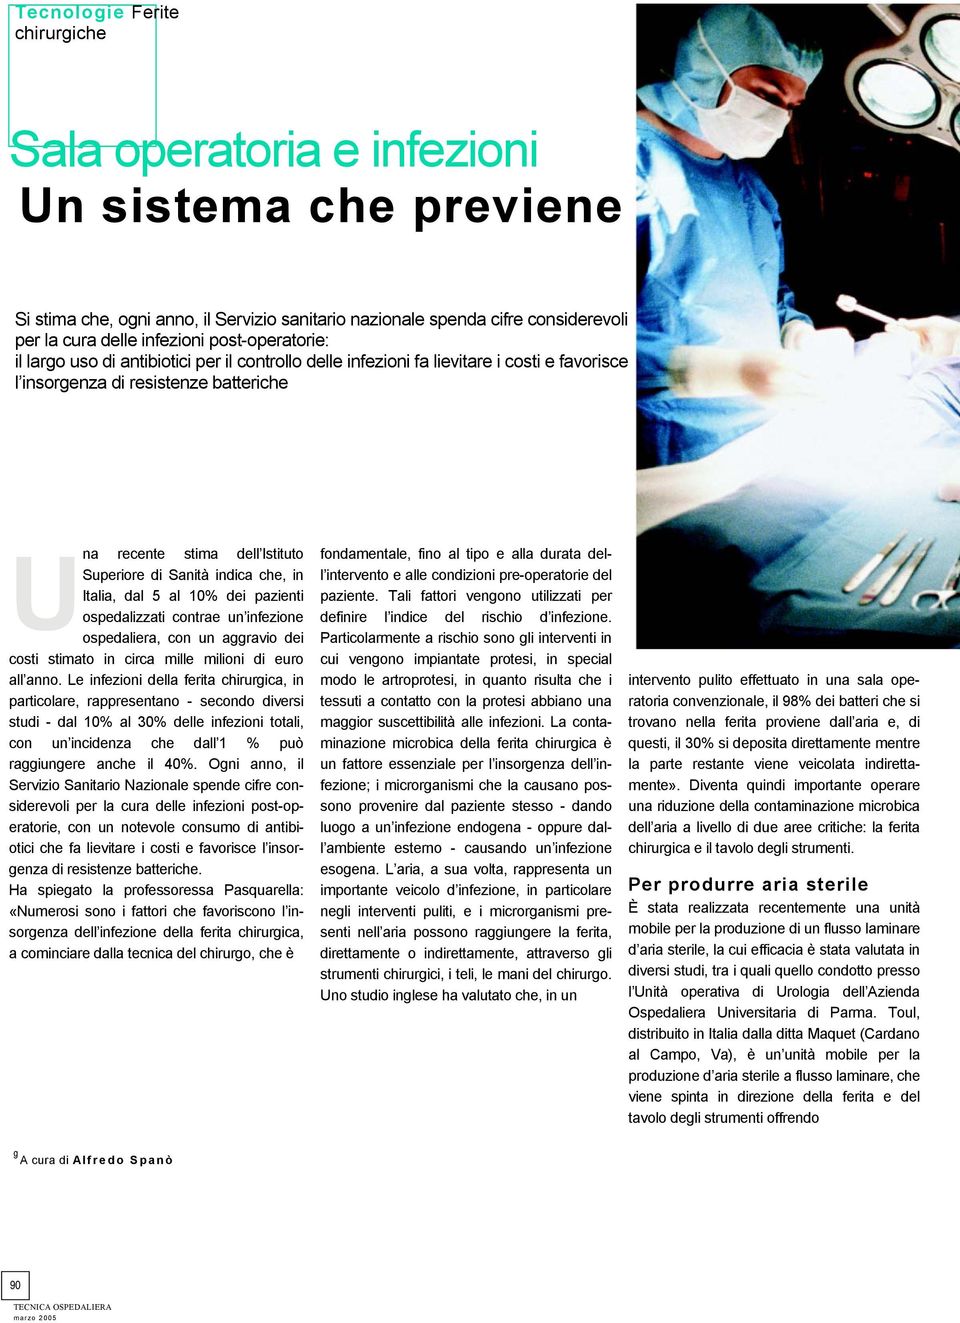 Italia, dal 5 al 10% dei pazienti ospedalizzati contrae un infezione ospedaliera, con un aggravio dei costi stimato in circa mille milioni di euro all anno.